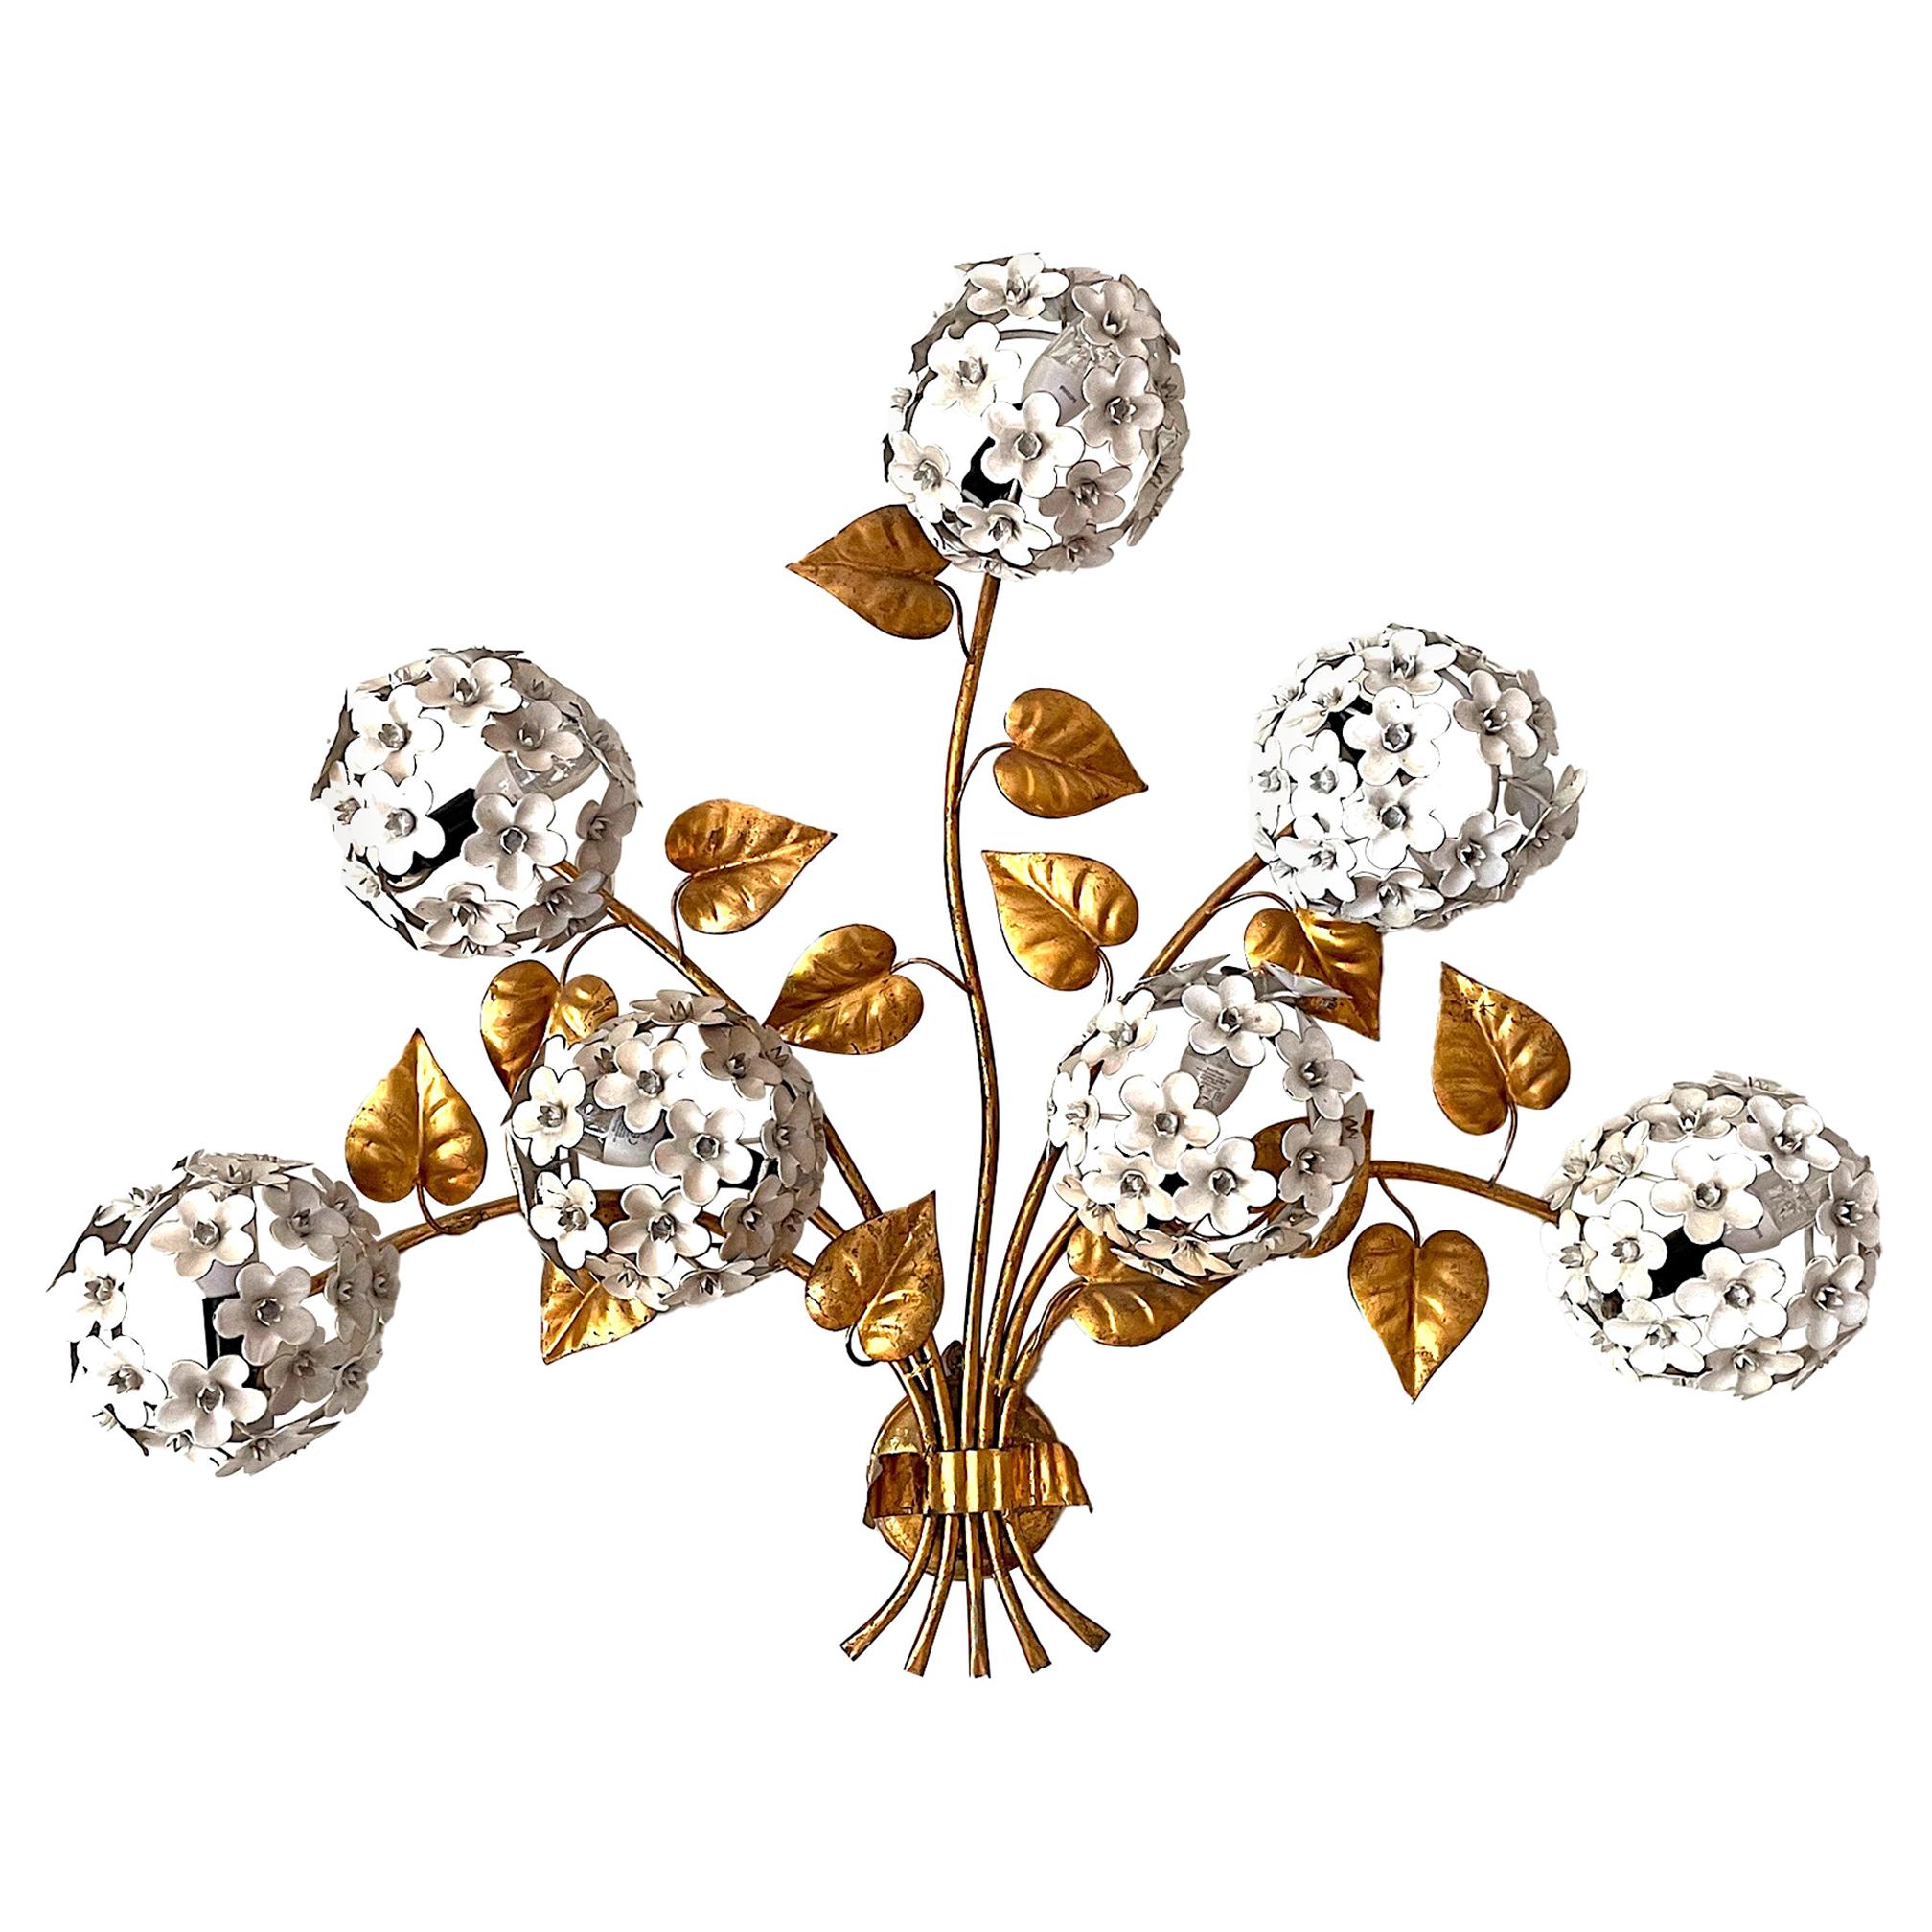 Wunderschöne Hortensien-Wandleuchte aus den 1950er Jahren mit sieben Lights hinter den Blumen